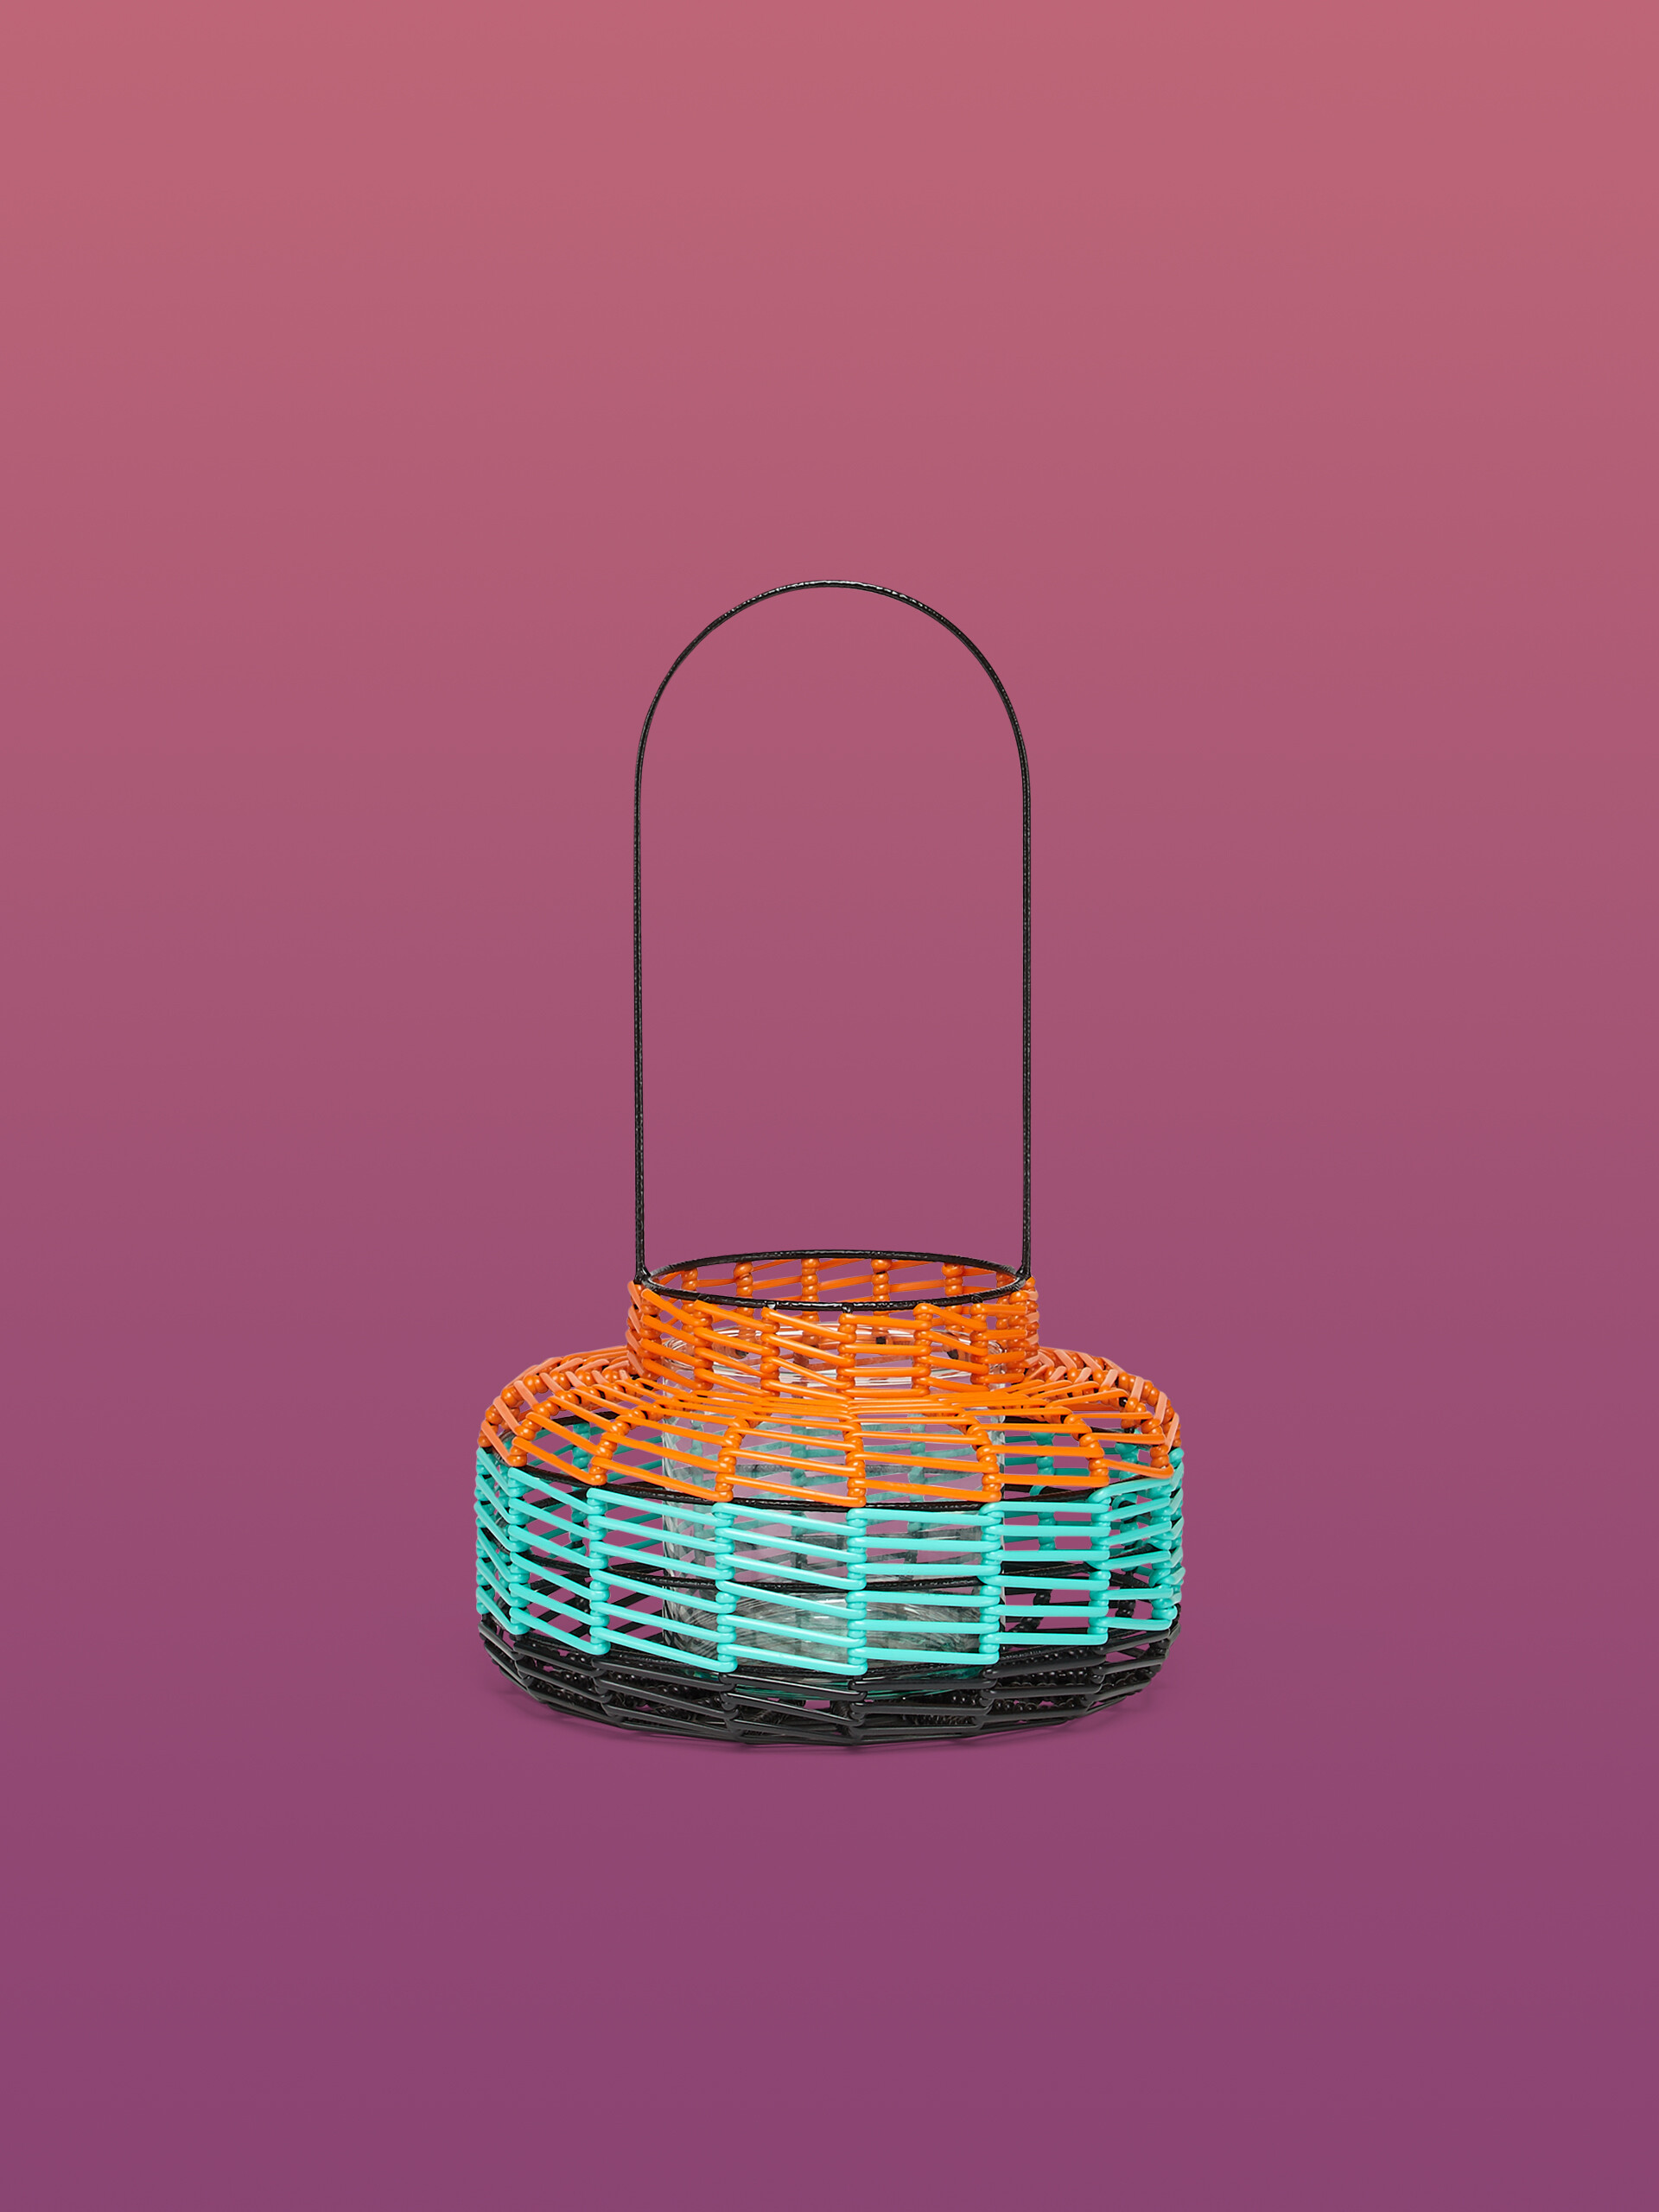 MARNI MARKET circular basket - Furniture - Image 1